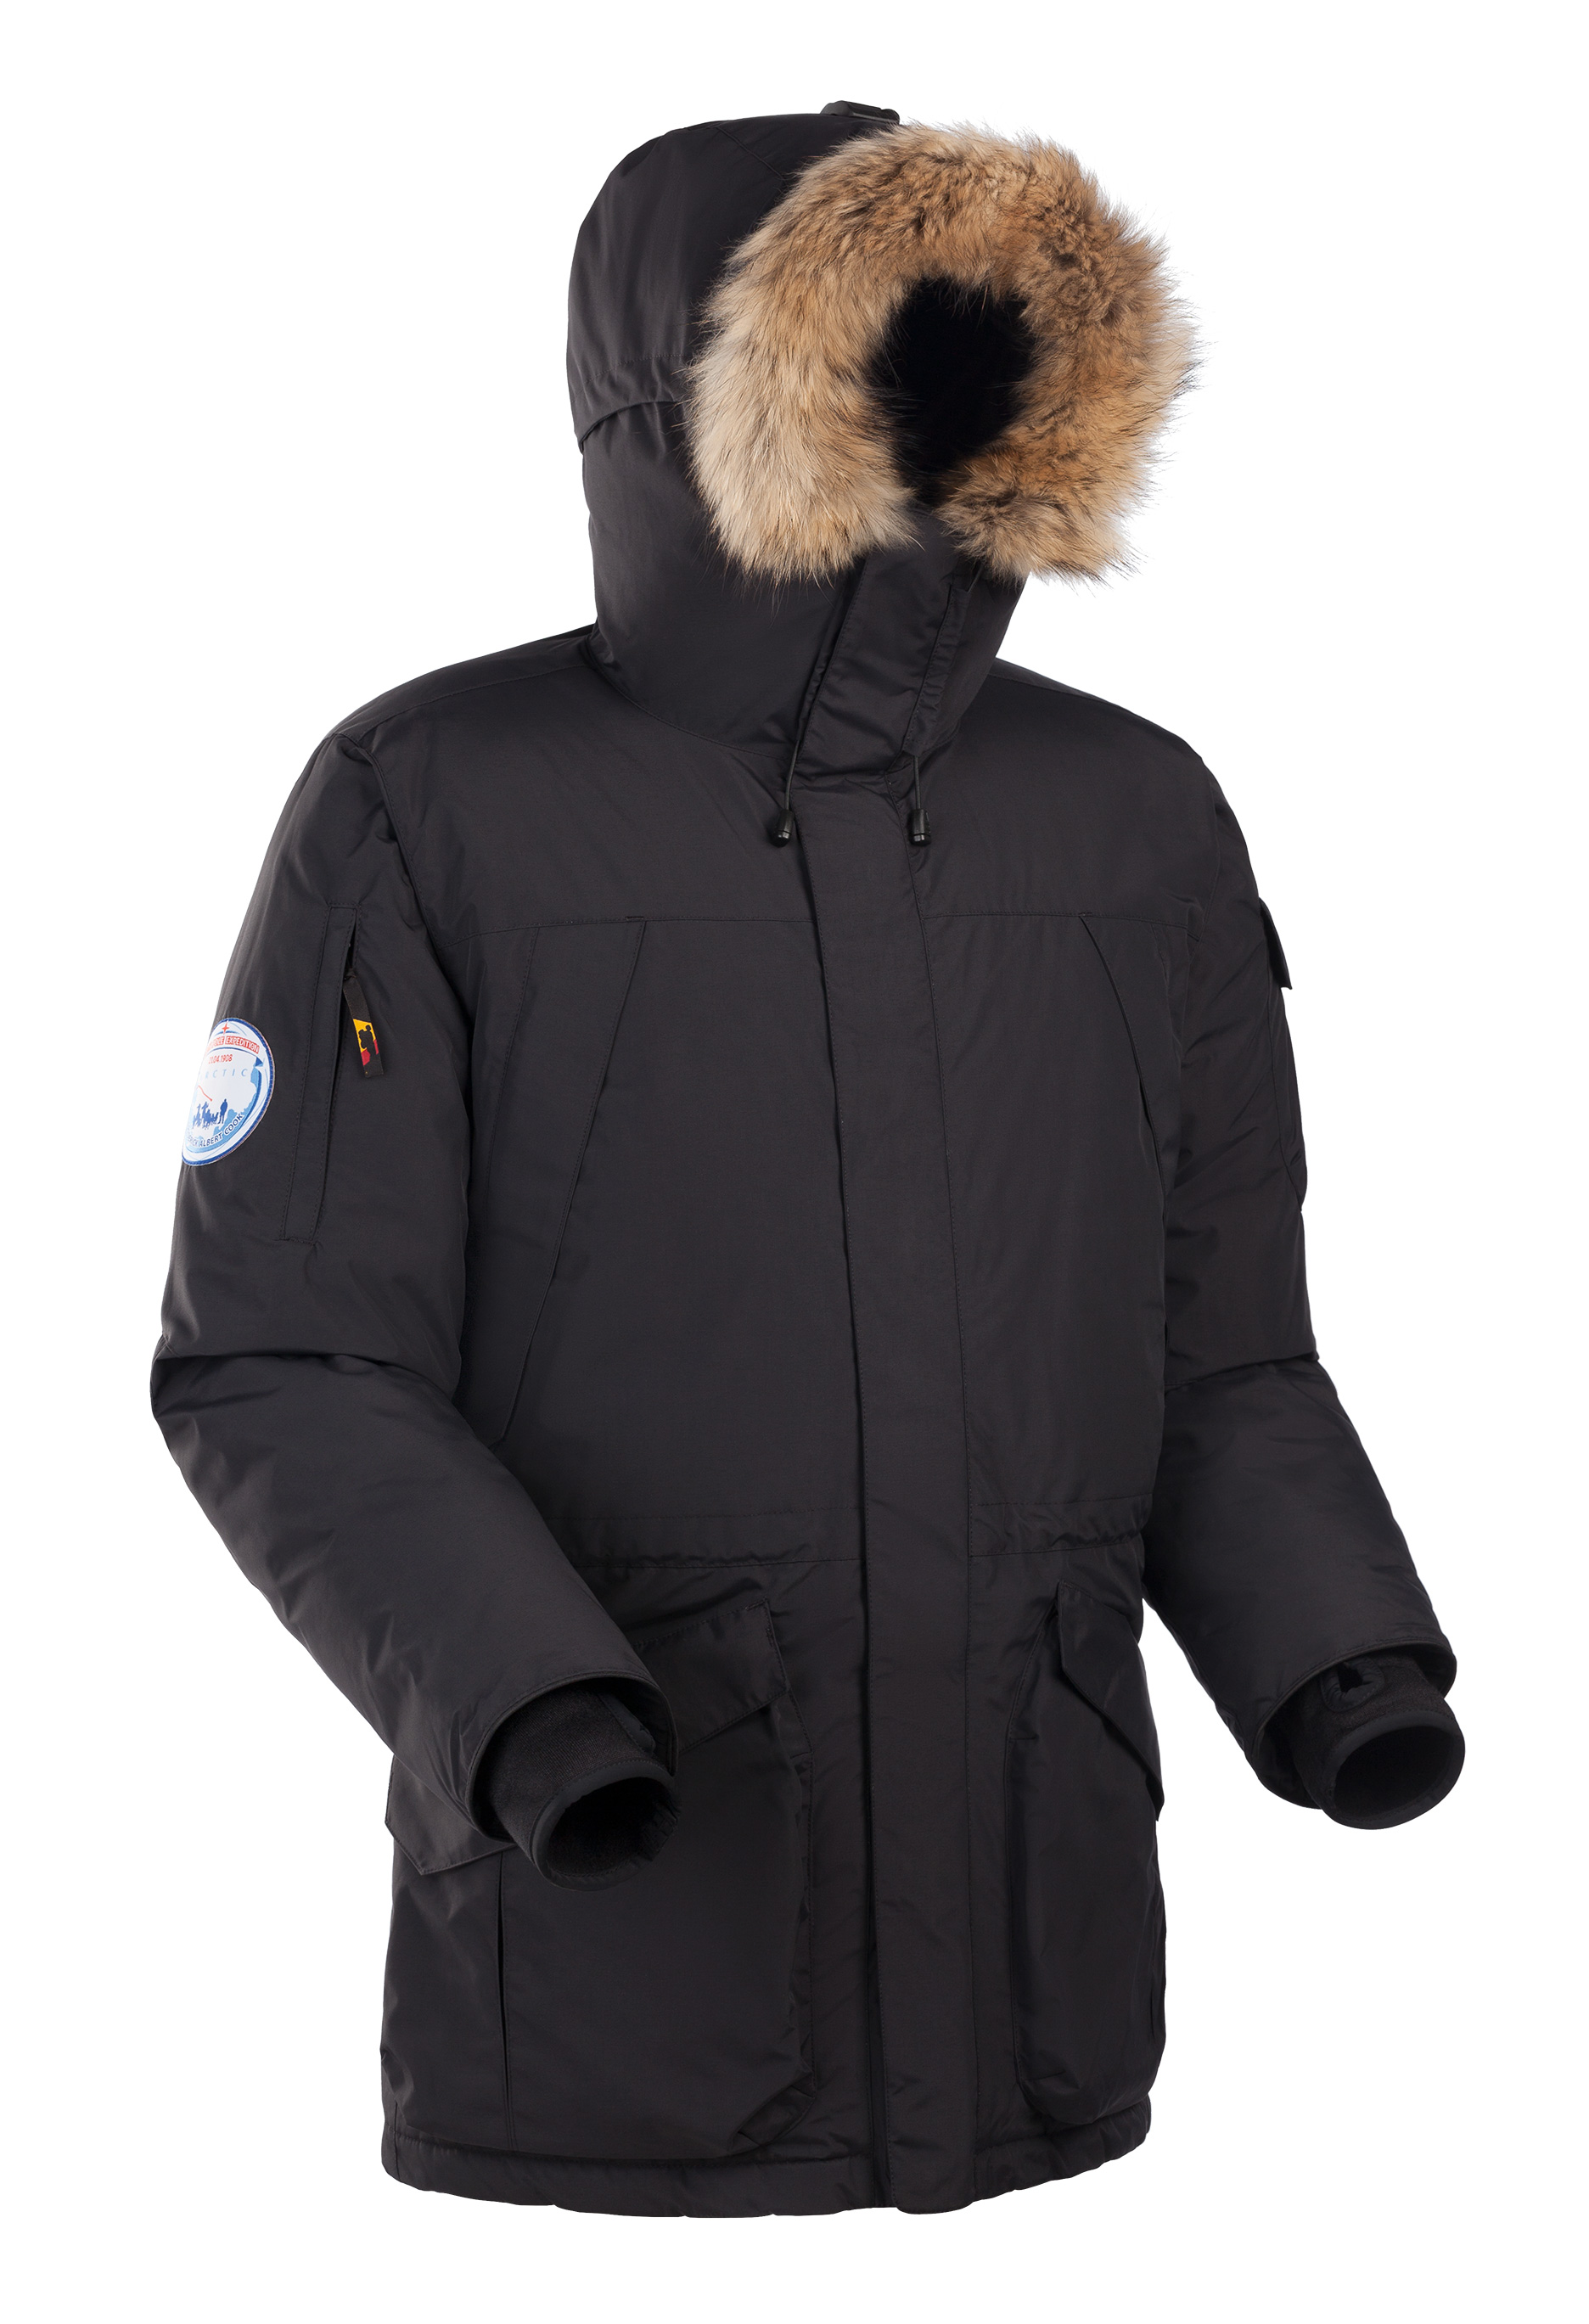 Купить куртку зимнюю омске. Пуховик Bask Alaska v2. Bask Antarctic куртка мужская красная. Bask Аляска v2. Куртка Bask Аляска.